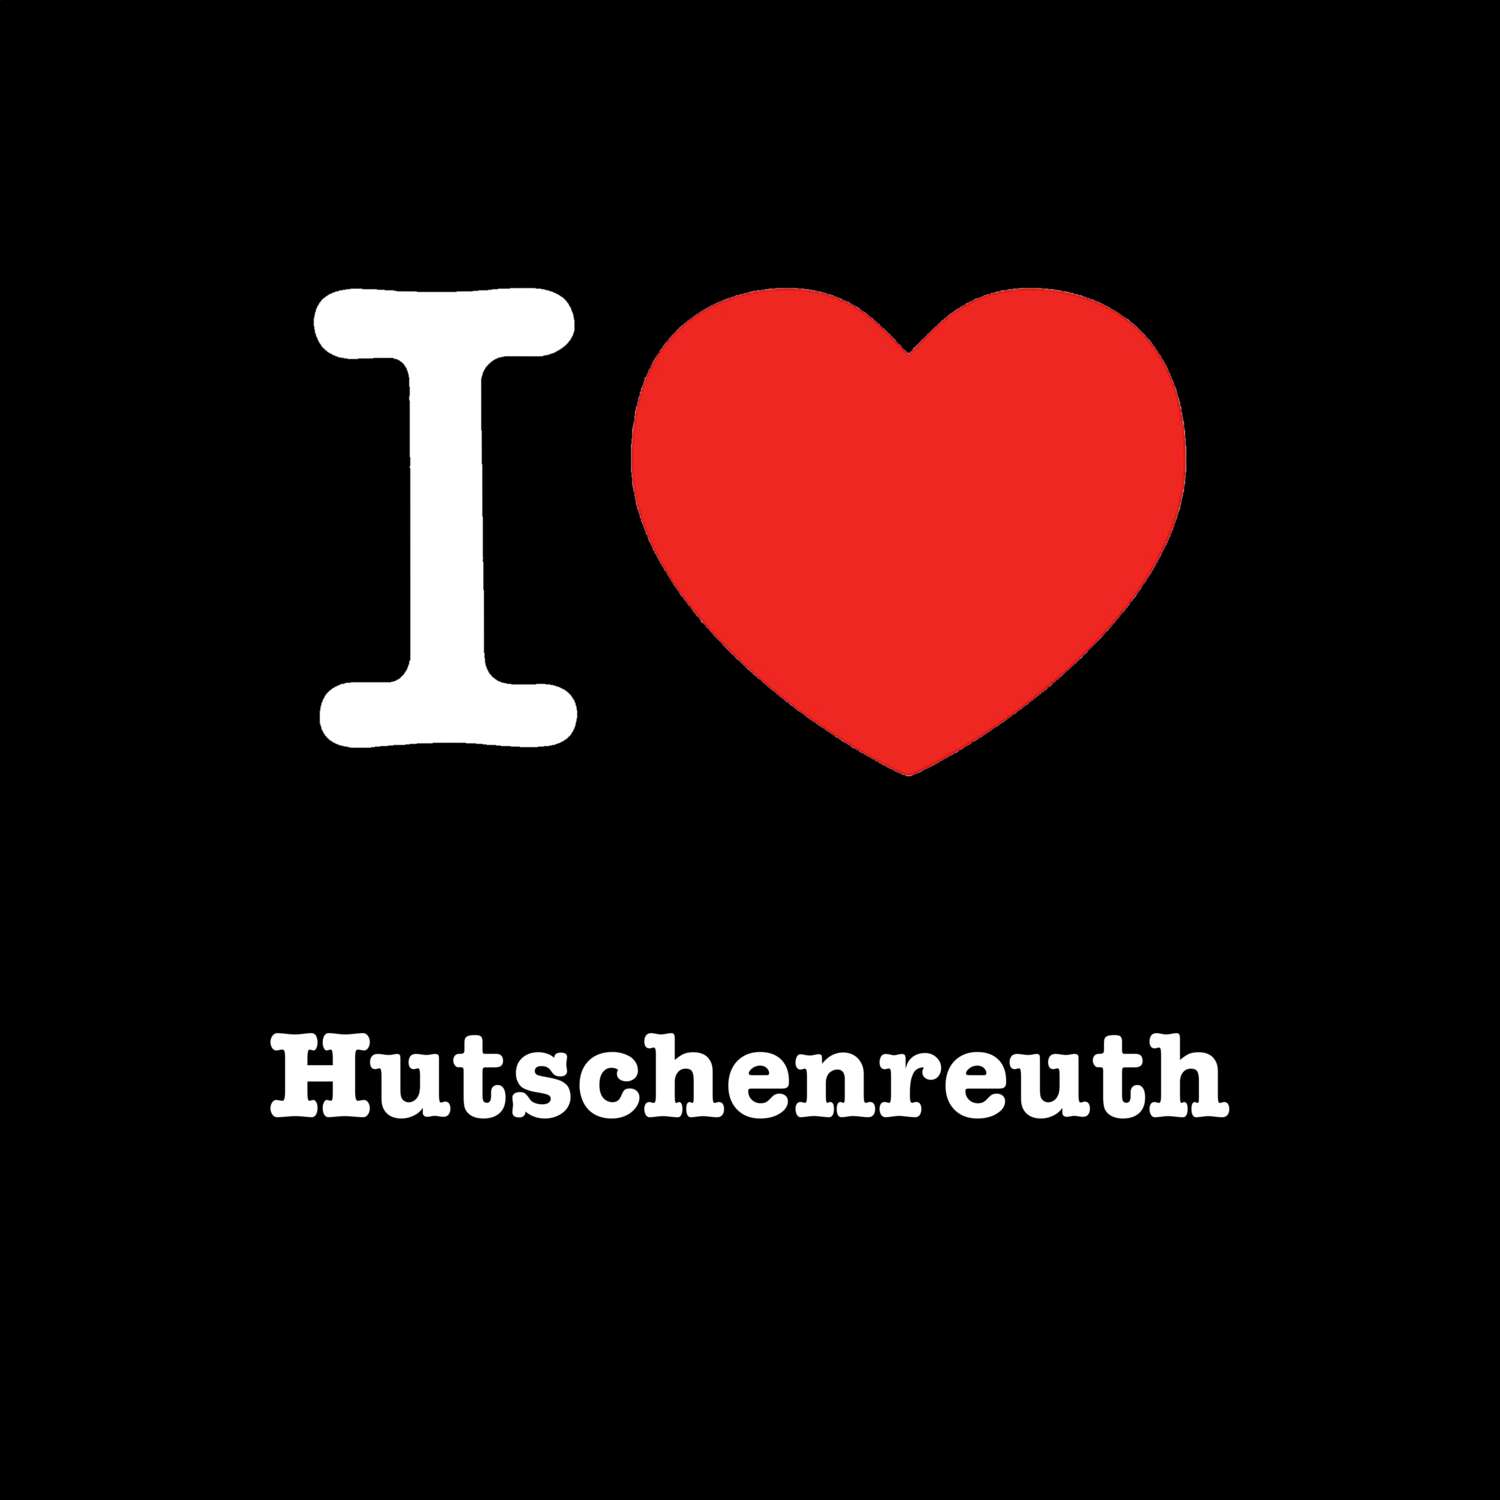 Hutschenreuth T-Shirt »I love«